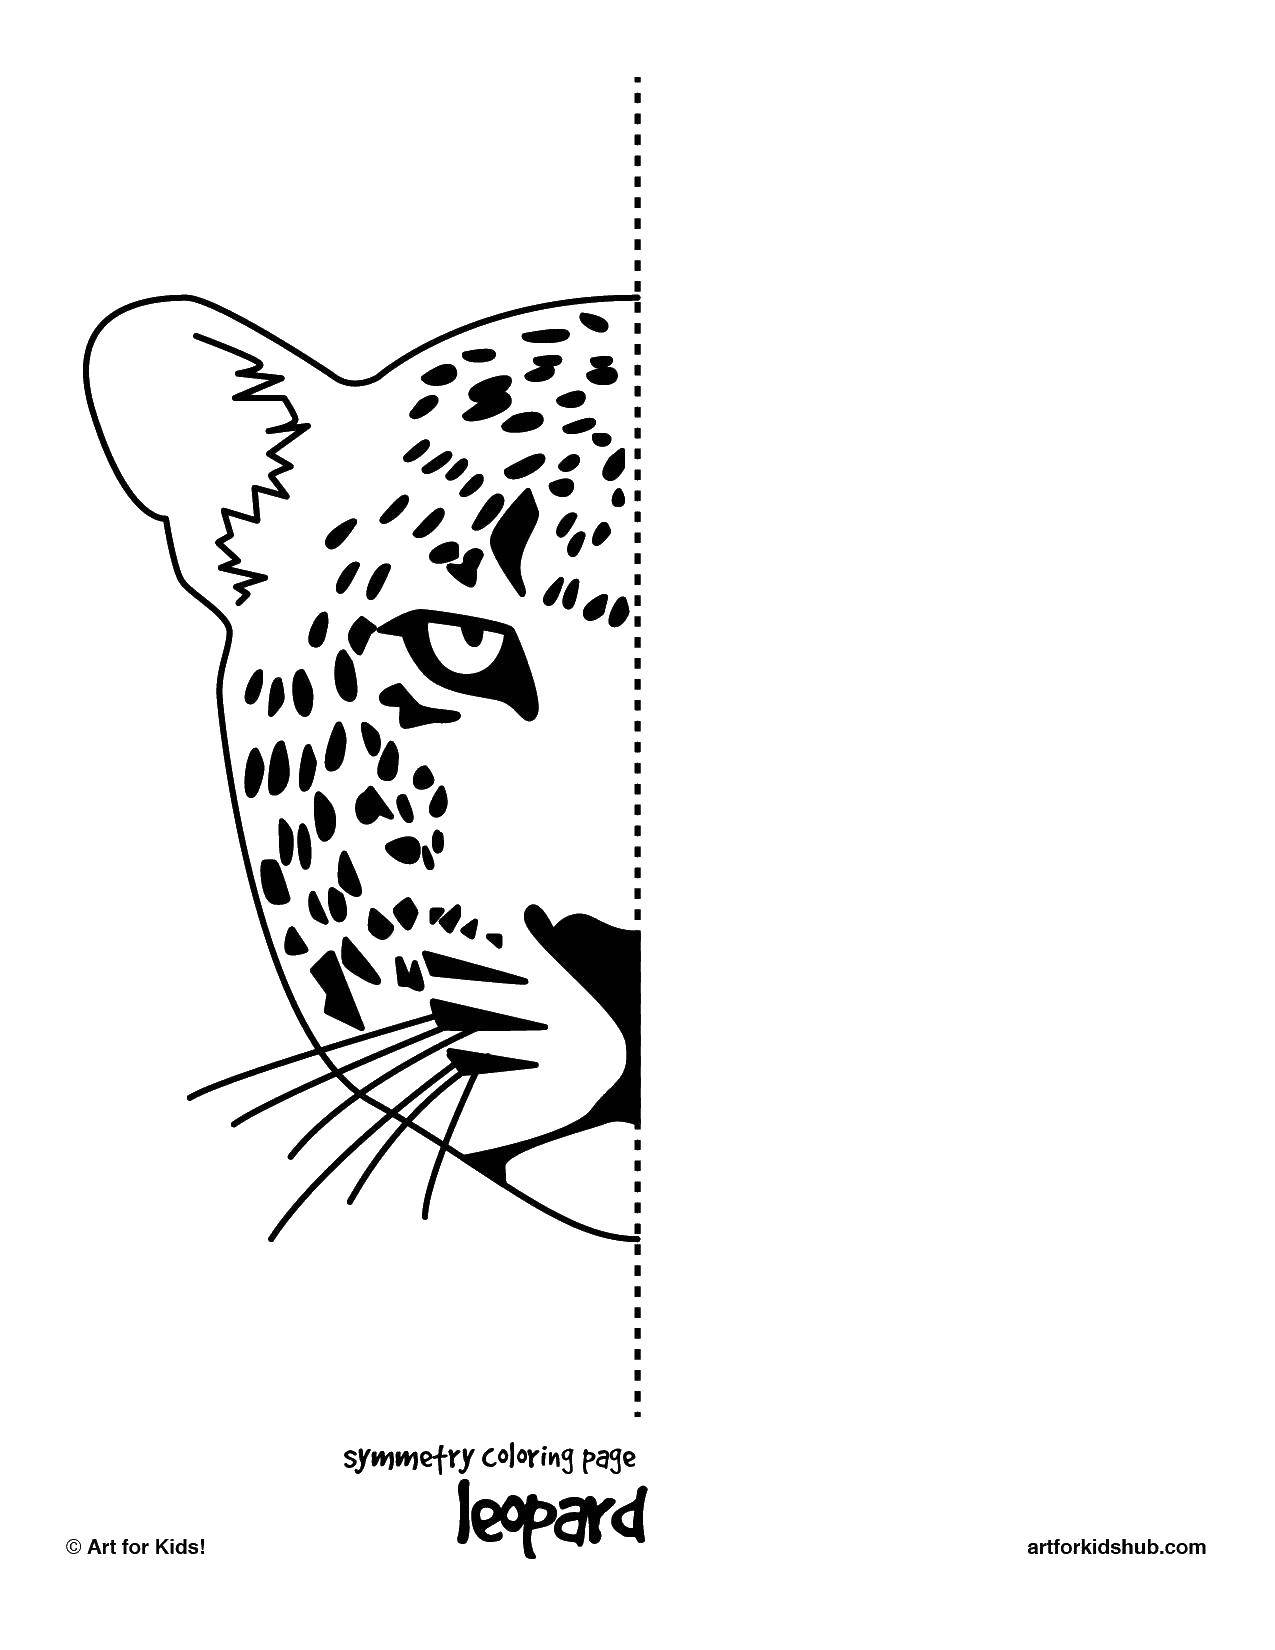 Розмальовки  Леопард. Завантажити розмальовку леопард, розмальовка.  Роздрукувати ,Калейдоскоп,